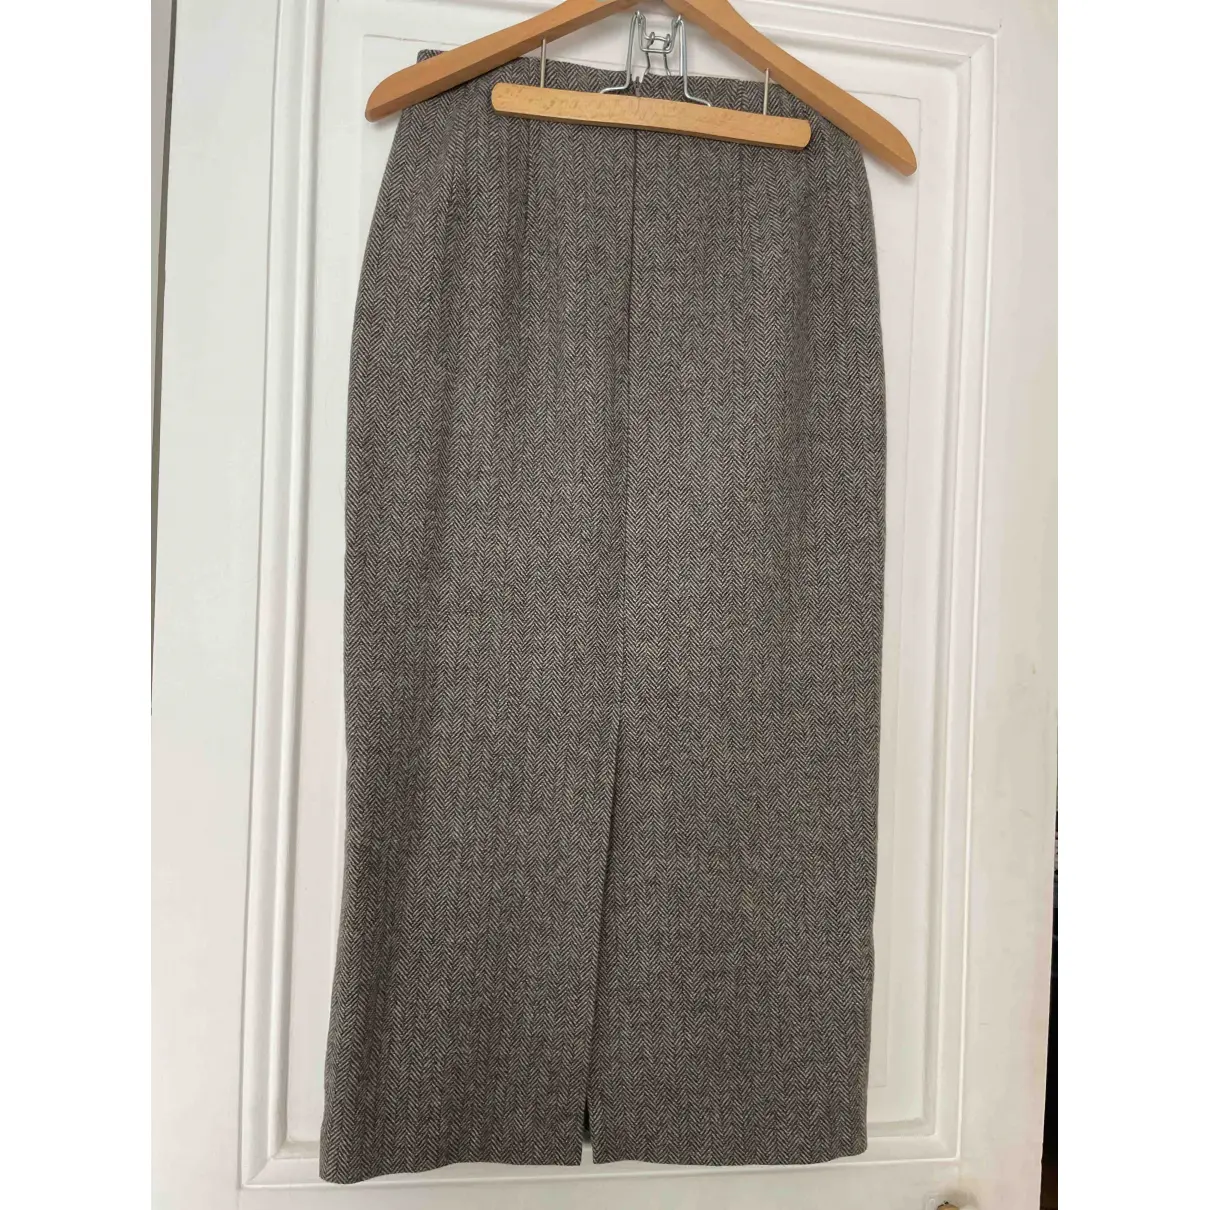 Buy The Frankie Shop Wool skirt online